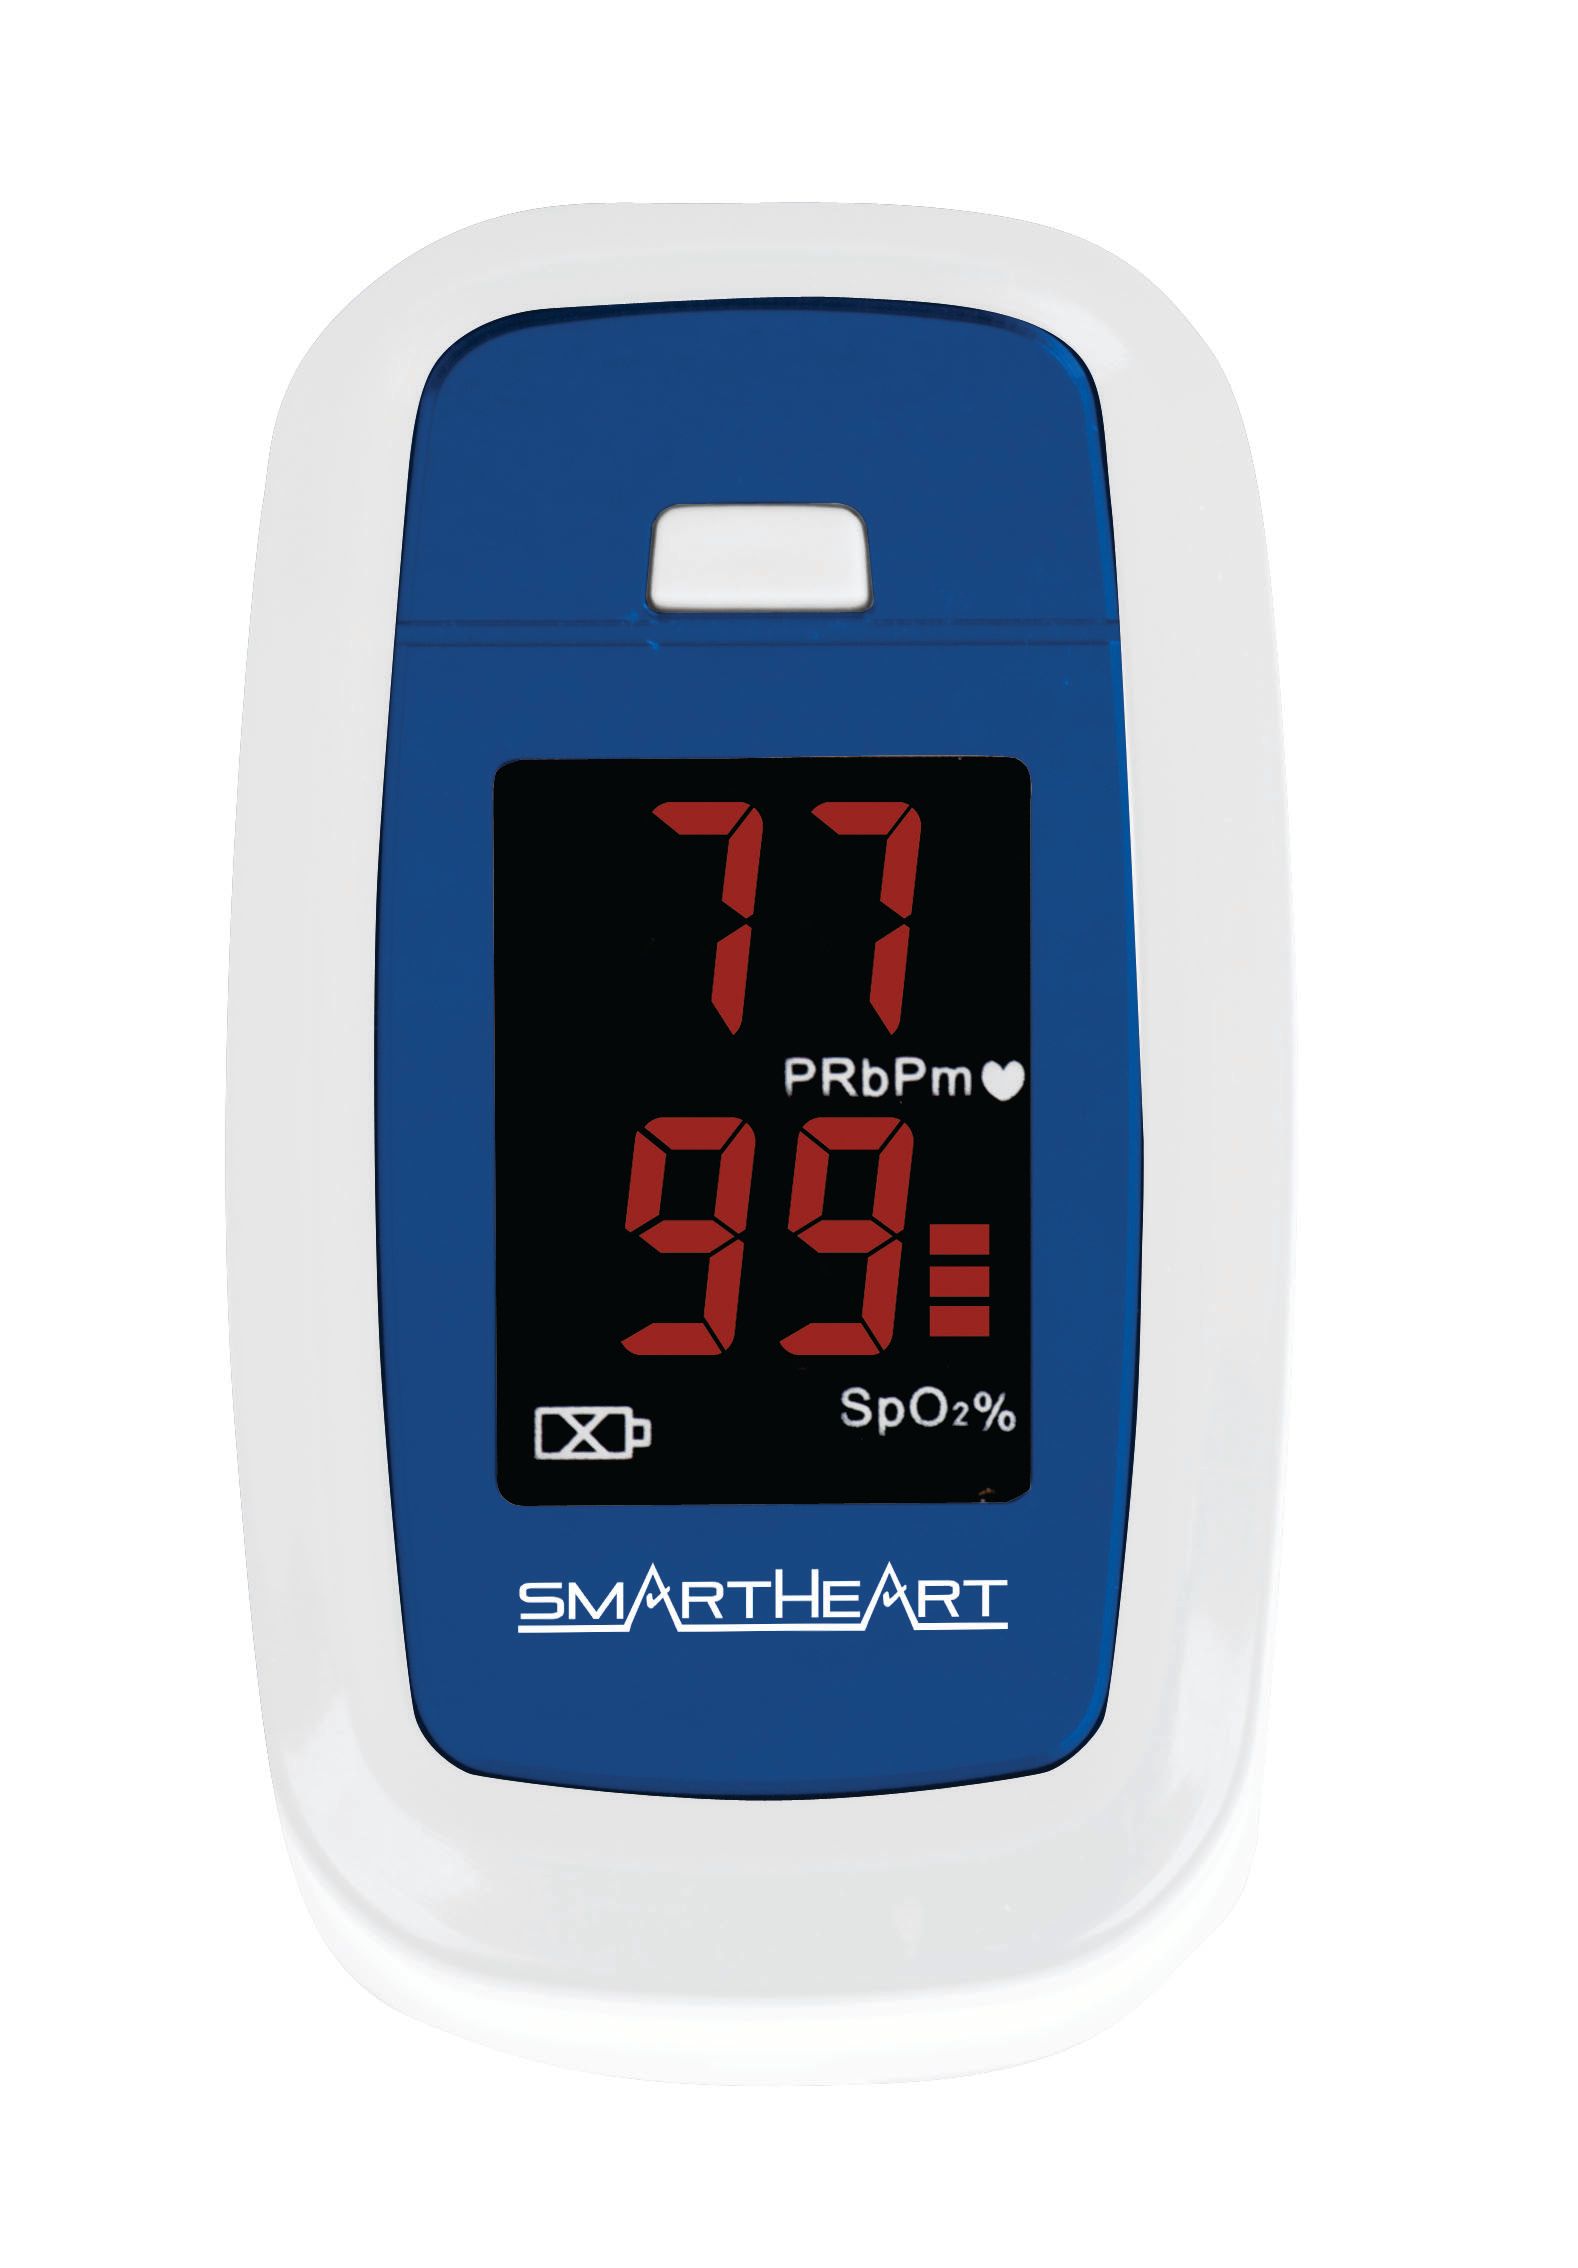 Smartheart Pulse Oximeter